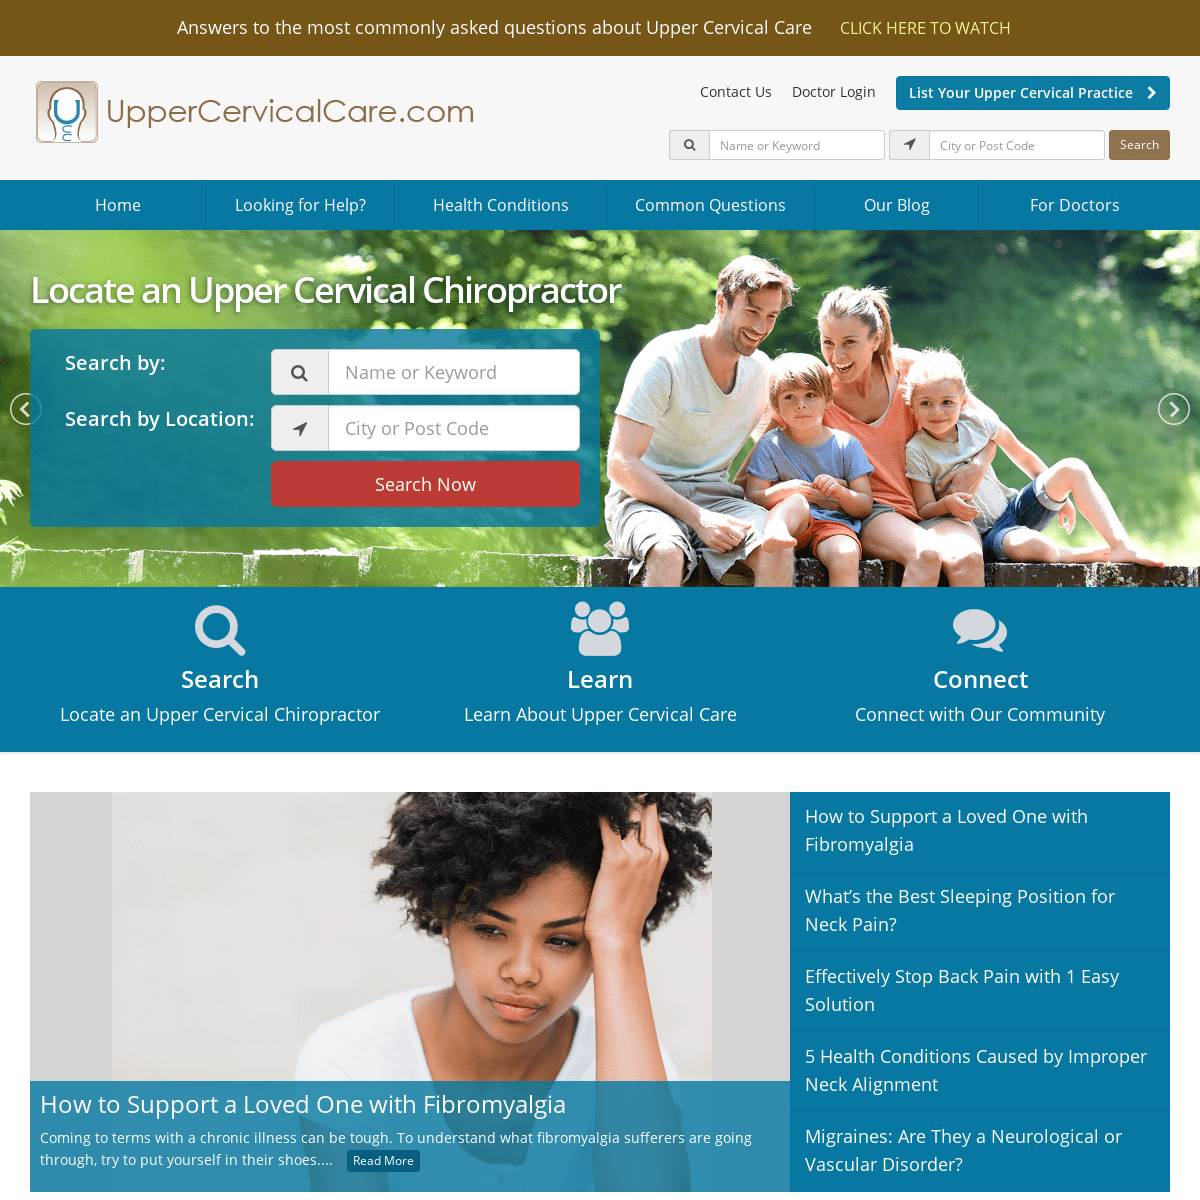 Comprehensive online directory of Upper Cervical Chiropractors